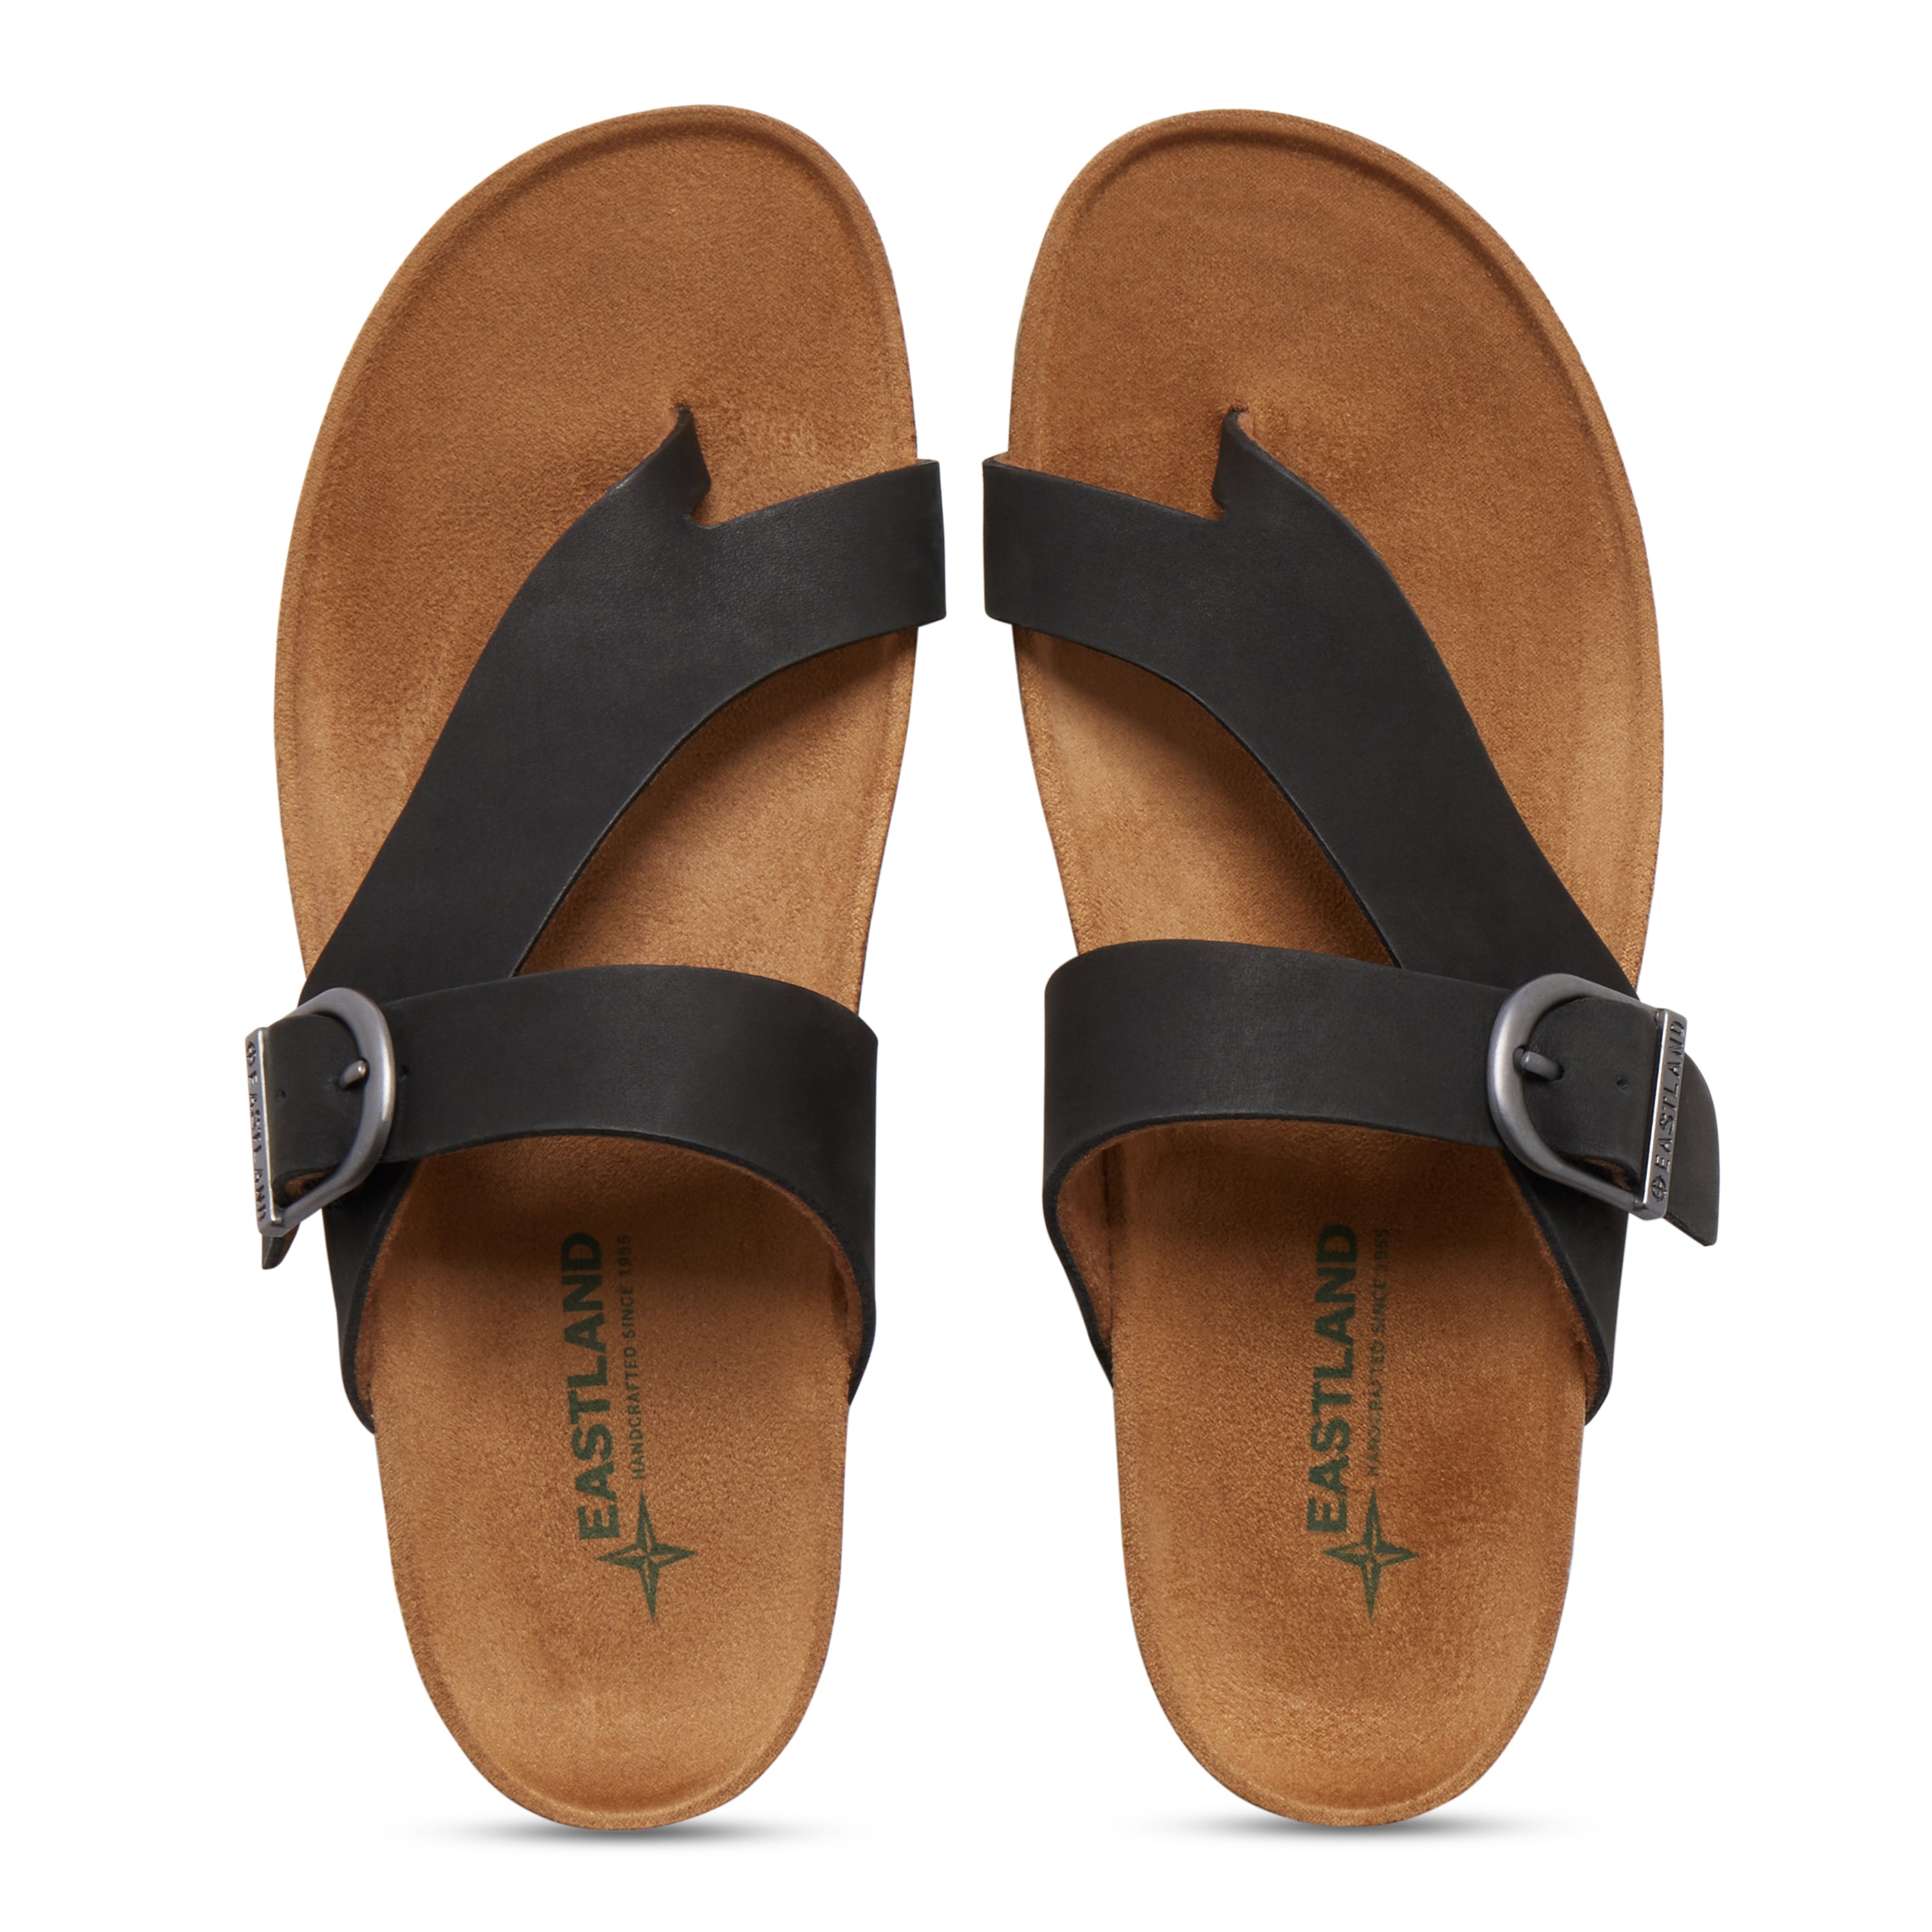 Buy Roadster Men Black & Grey Comfort Sandals - Sandals for Men 9045137 |  Myntra - Price History